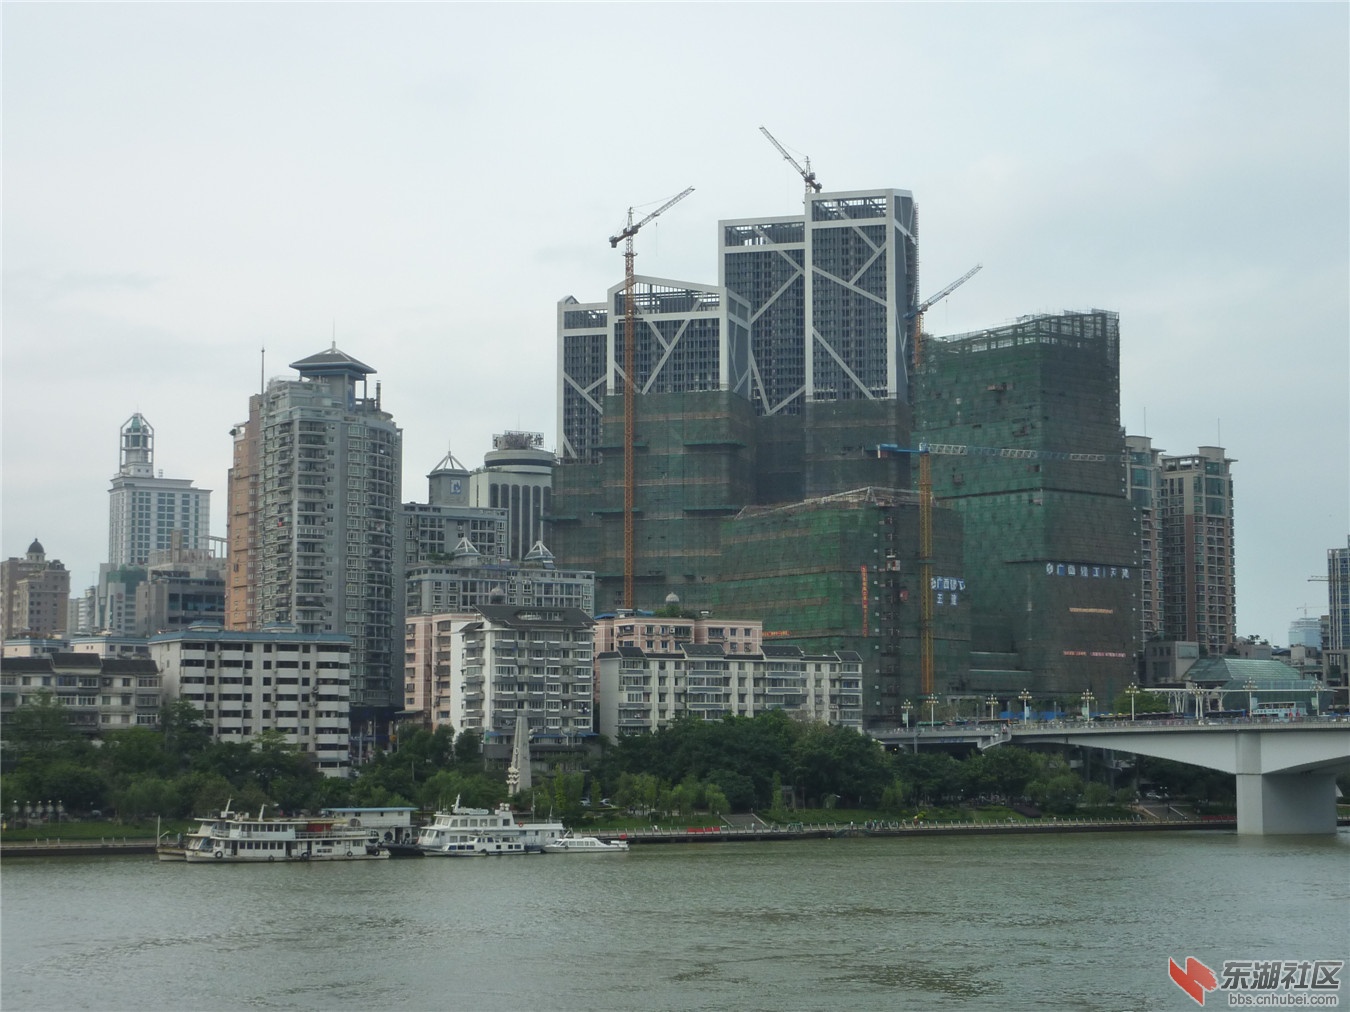 柳州地王国际财富中心73层310.6米目前在建超过150米